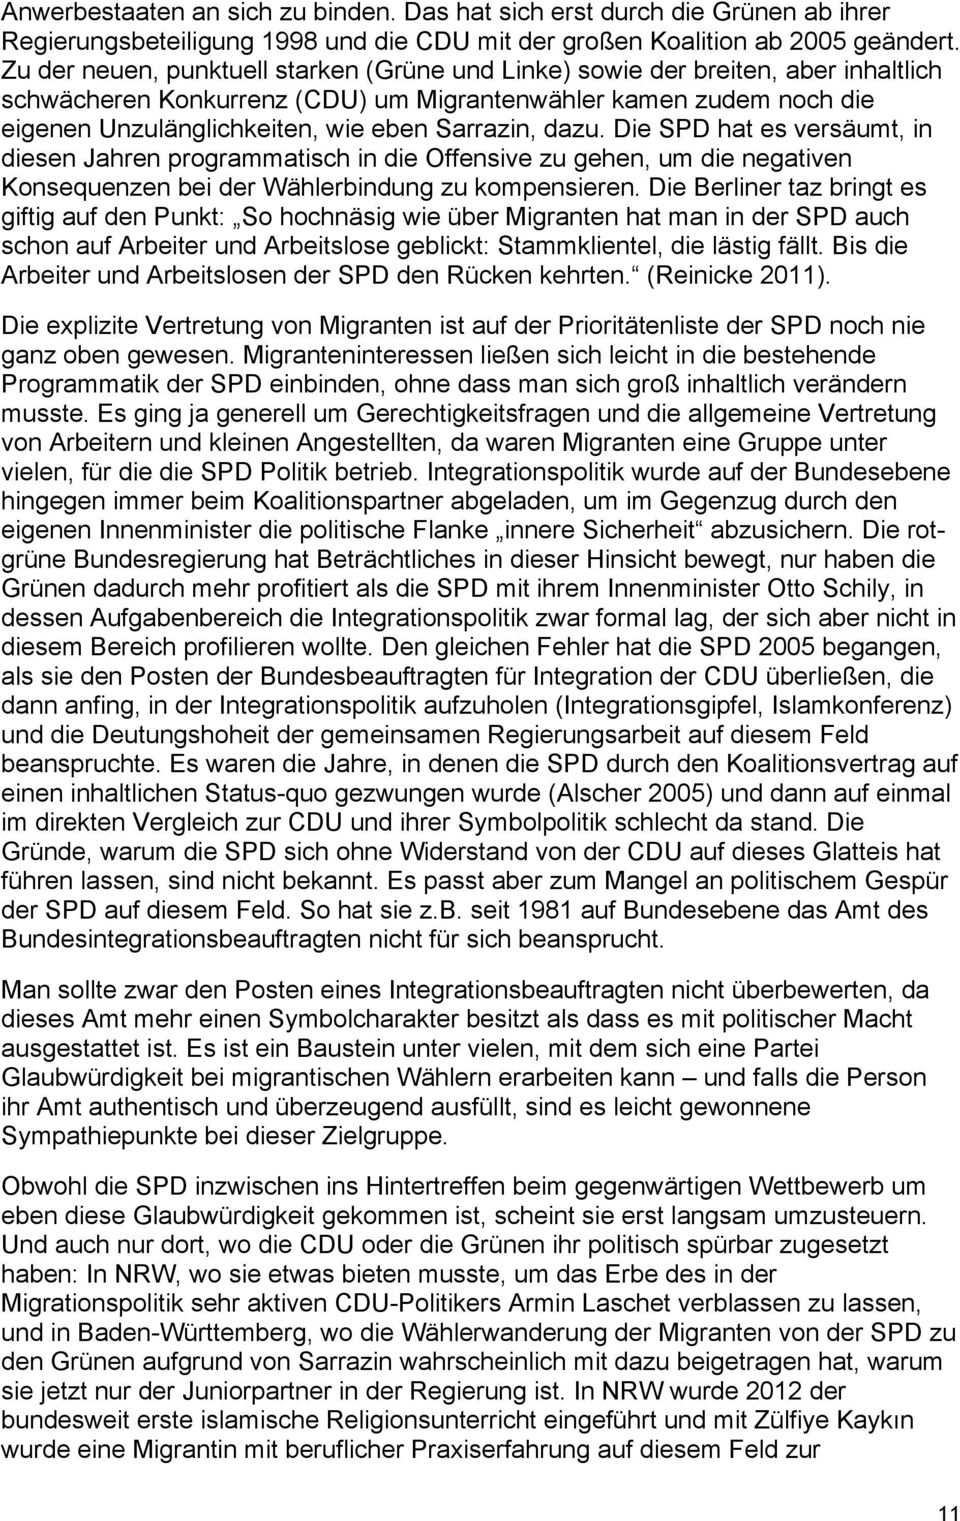 Sarrazin, dazu. Die SPD hat es versäumt, in diesen Jahren programmatisch in die Offensive zu gehen, um die negativen Konsequenzen bei der Wählerbindung zu kompensieren.